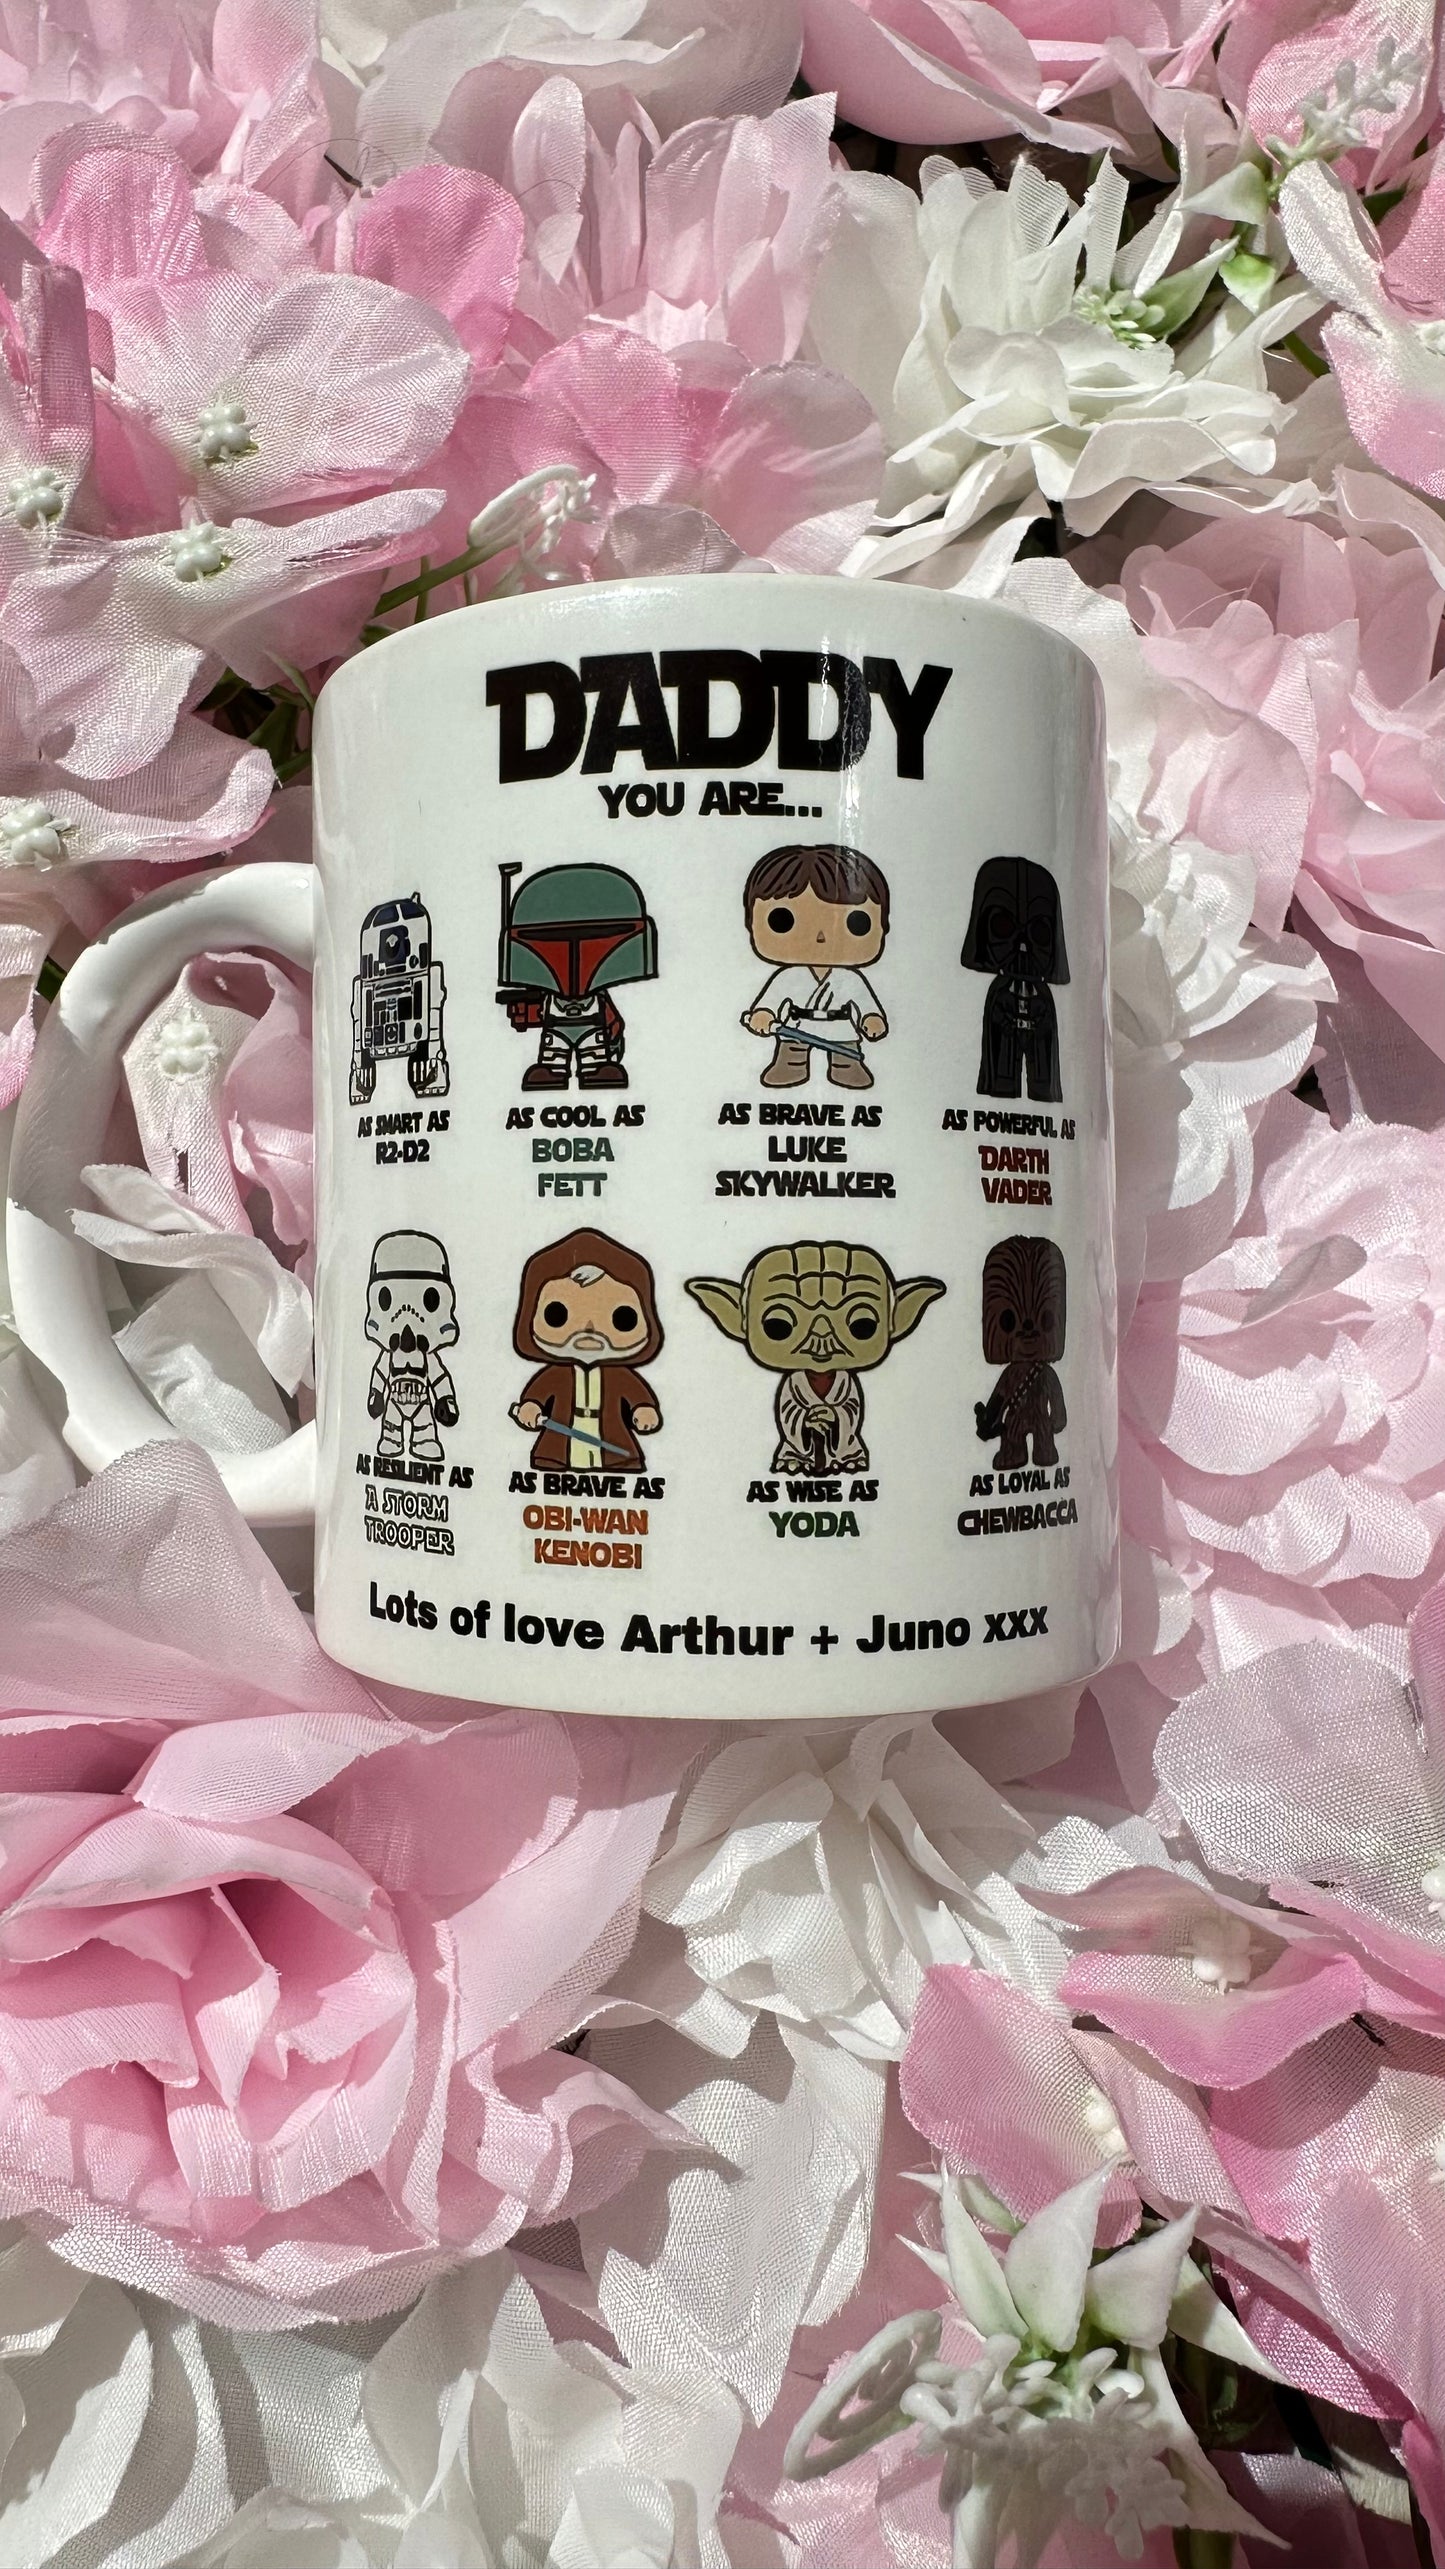 You are as - Star Wars mug